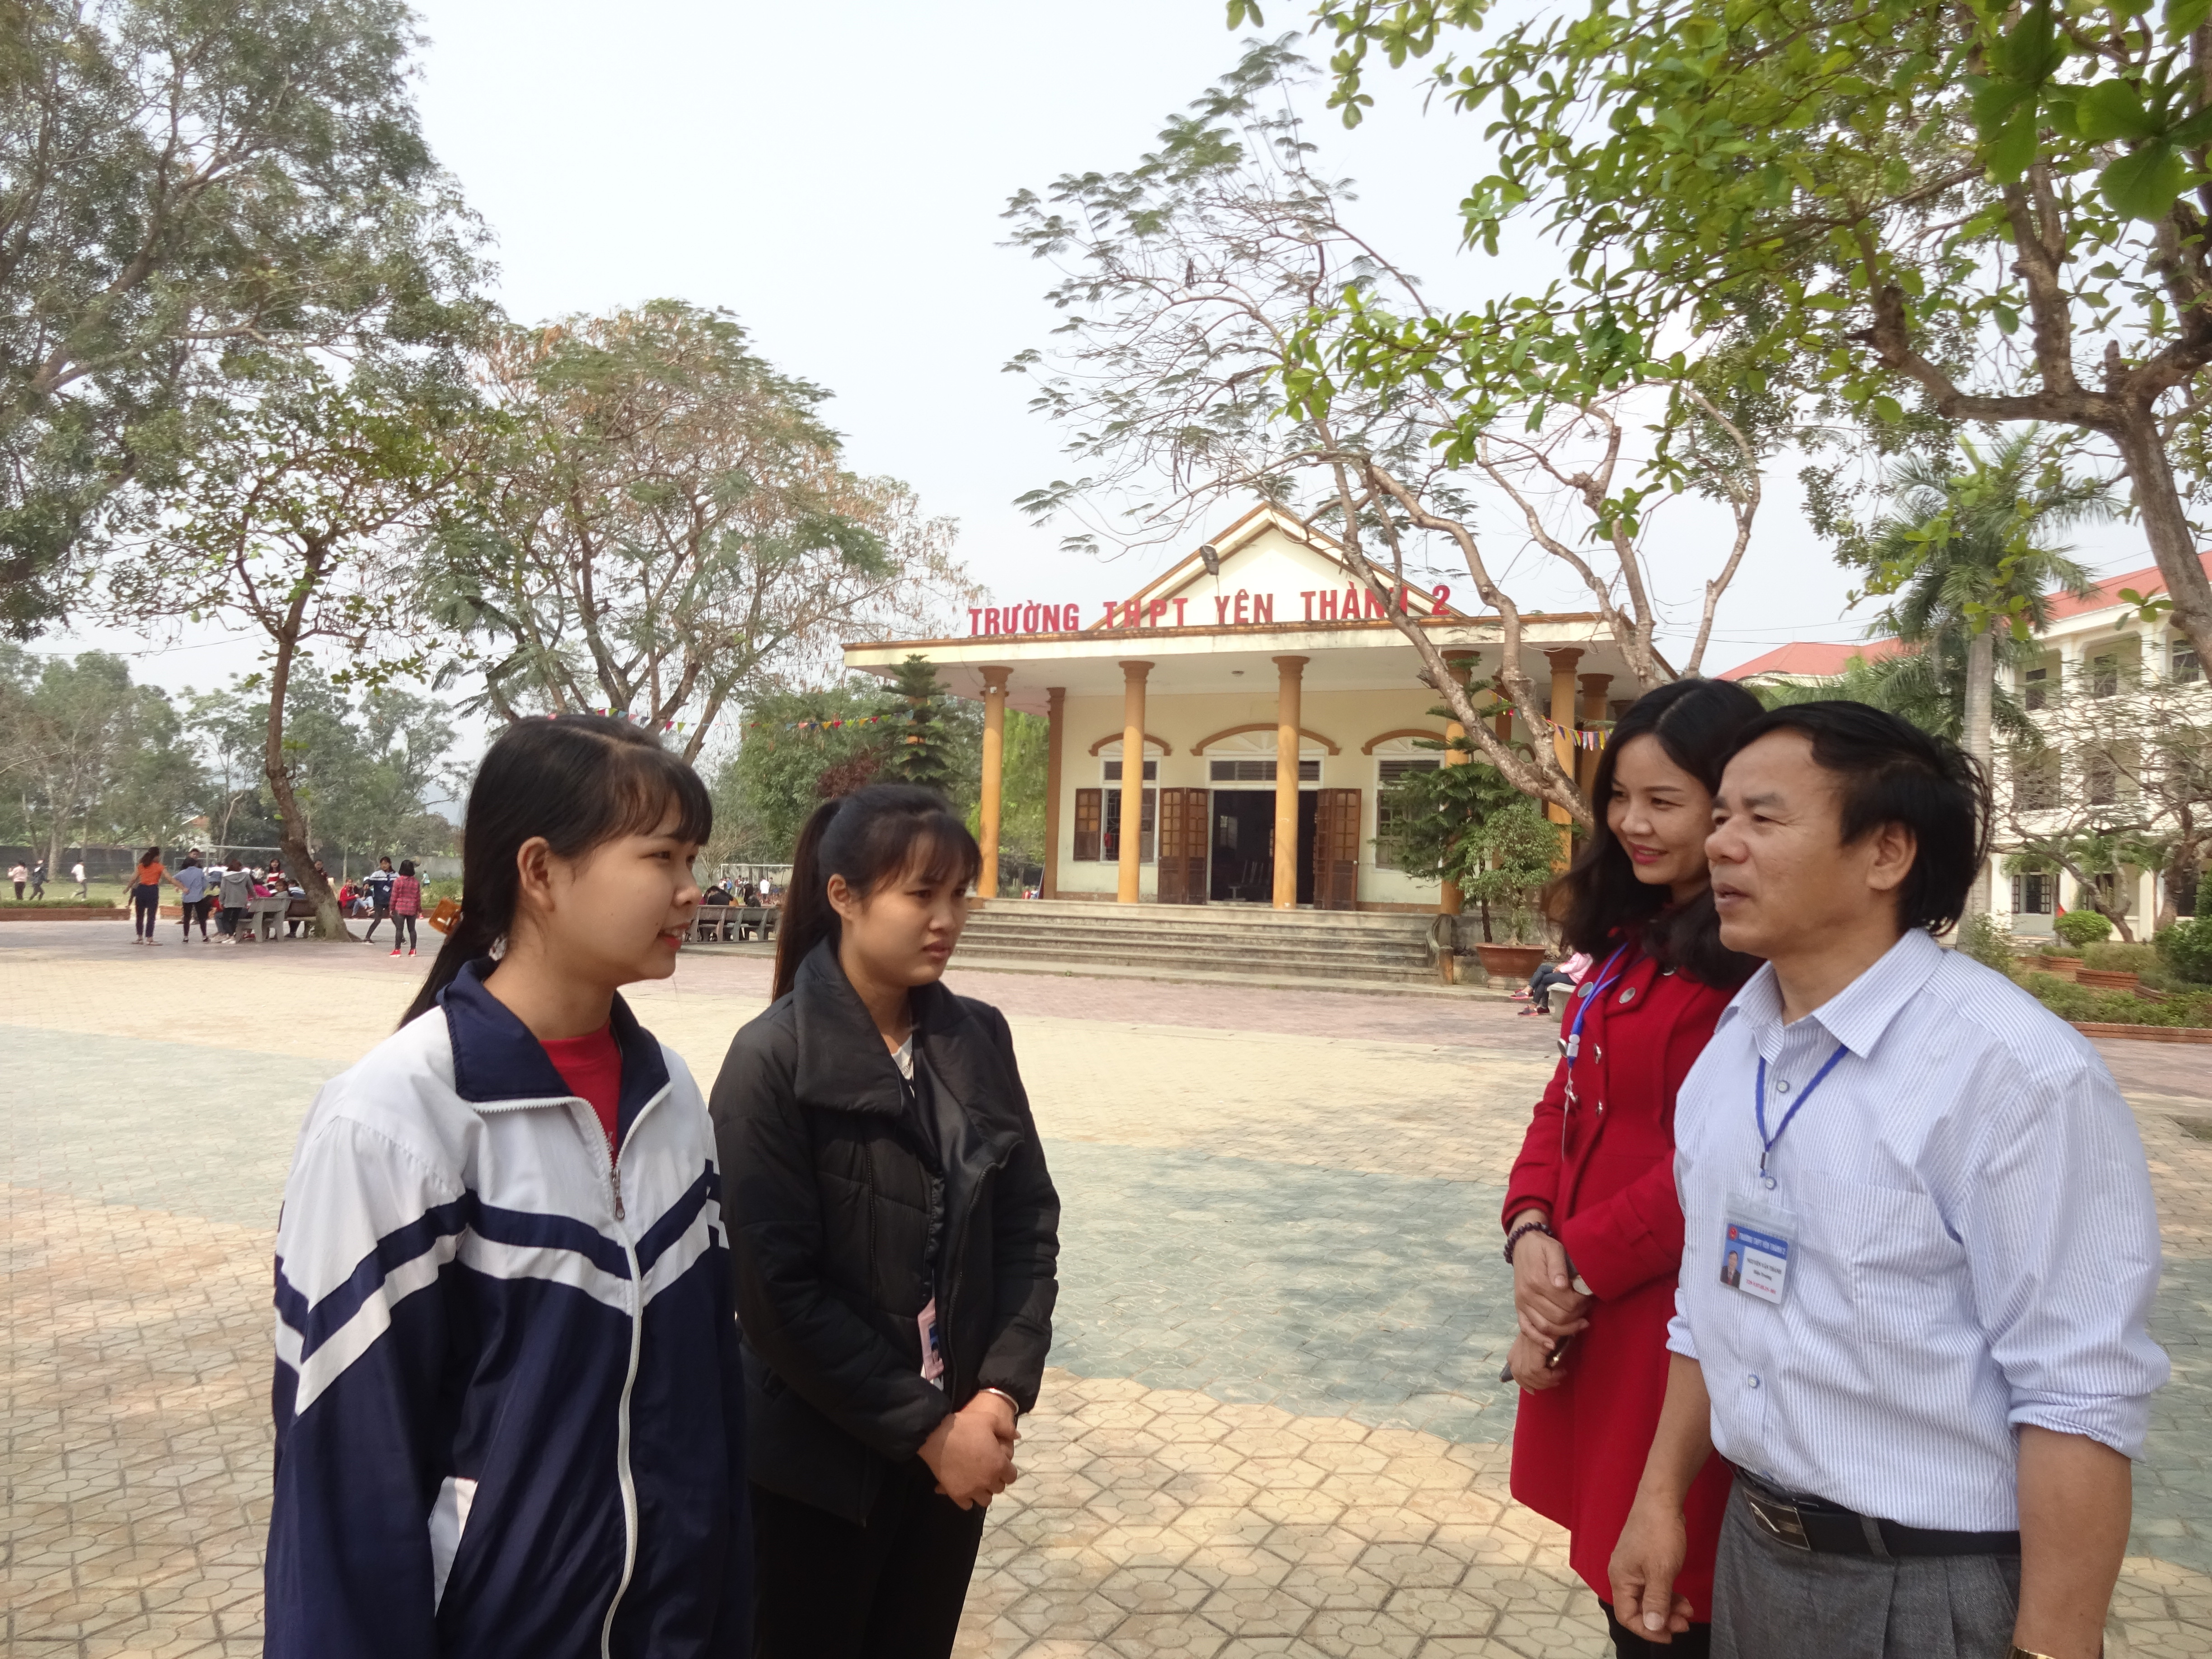 Ban giám hiệu trường THPT Yên Thành 2 gặp gỡ, biểu dương hành động đẹp của 2 học sinh Bình và Vân